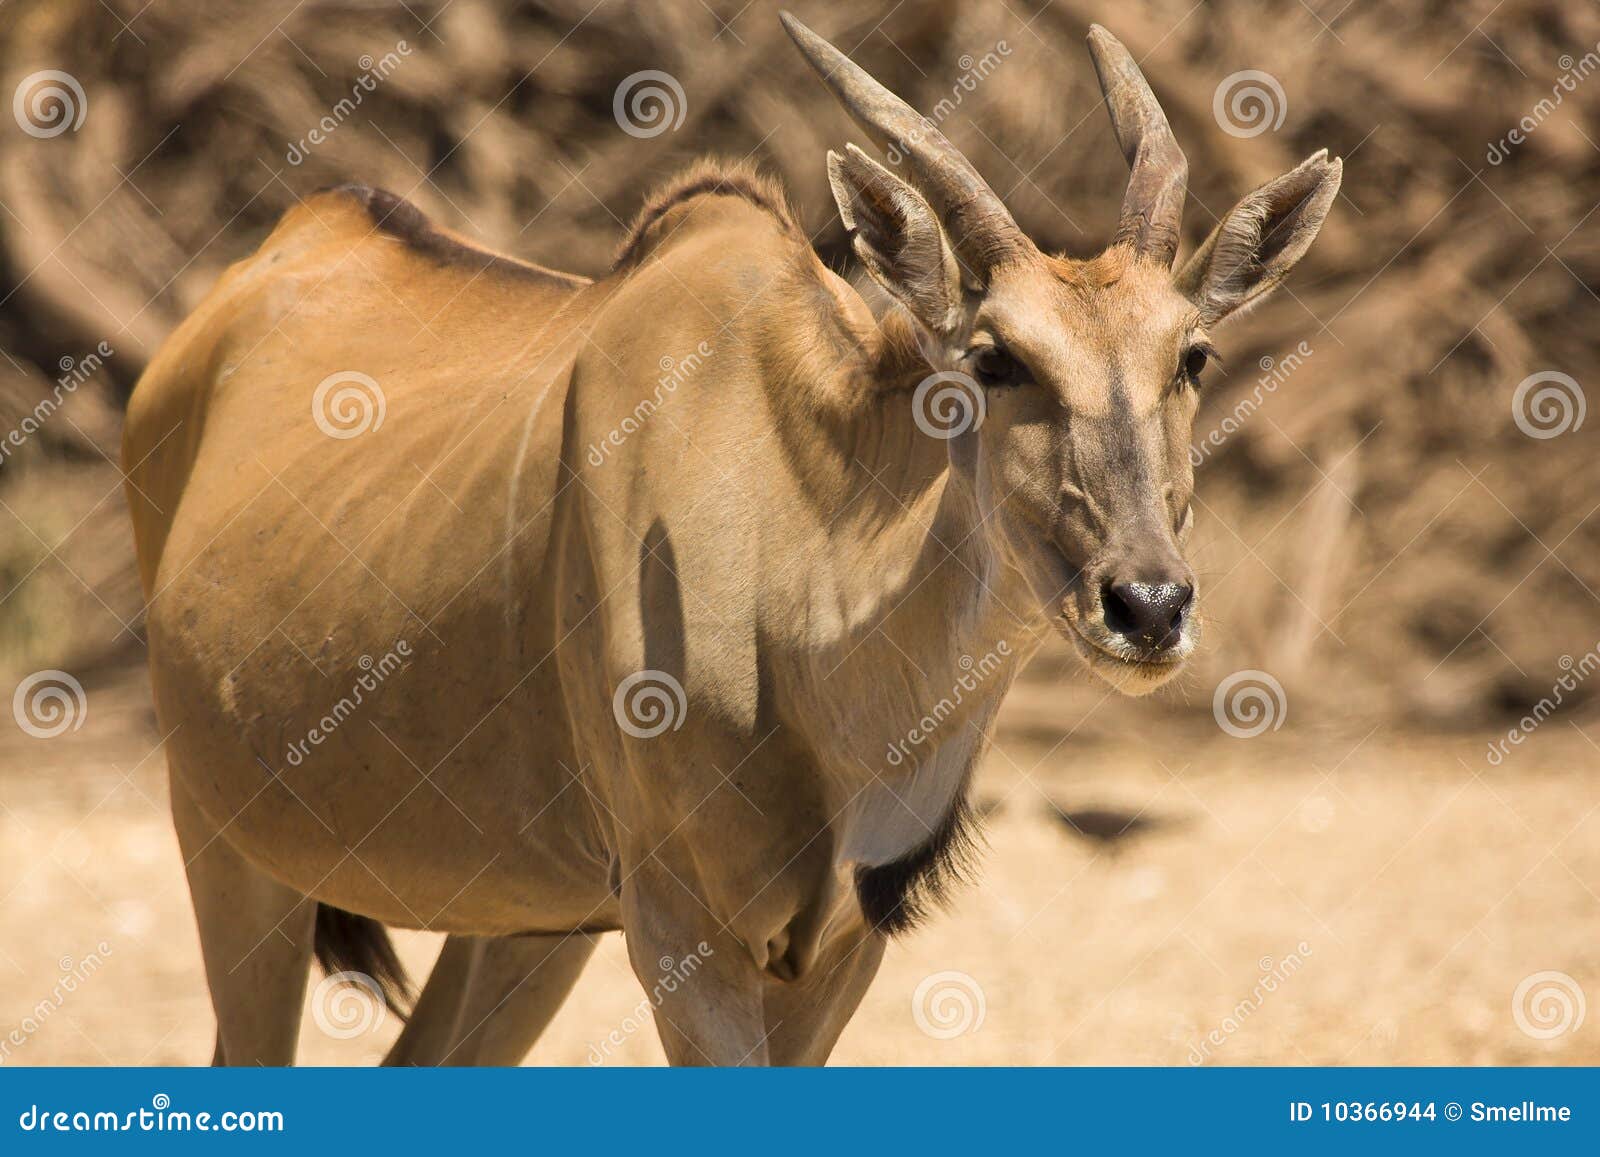 eland antelope